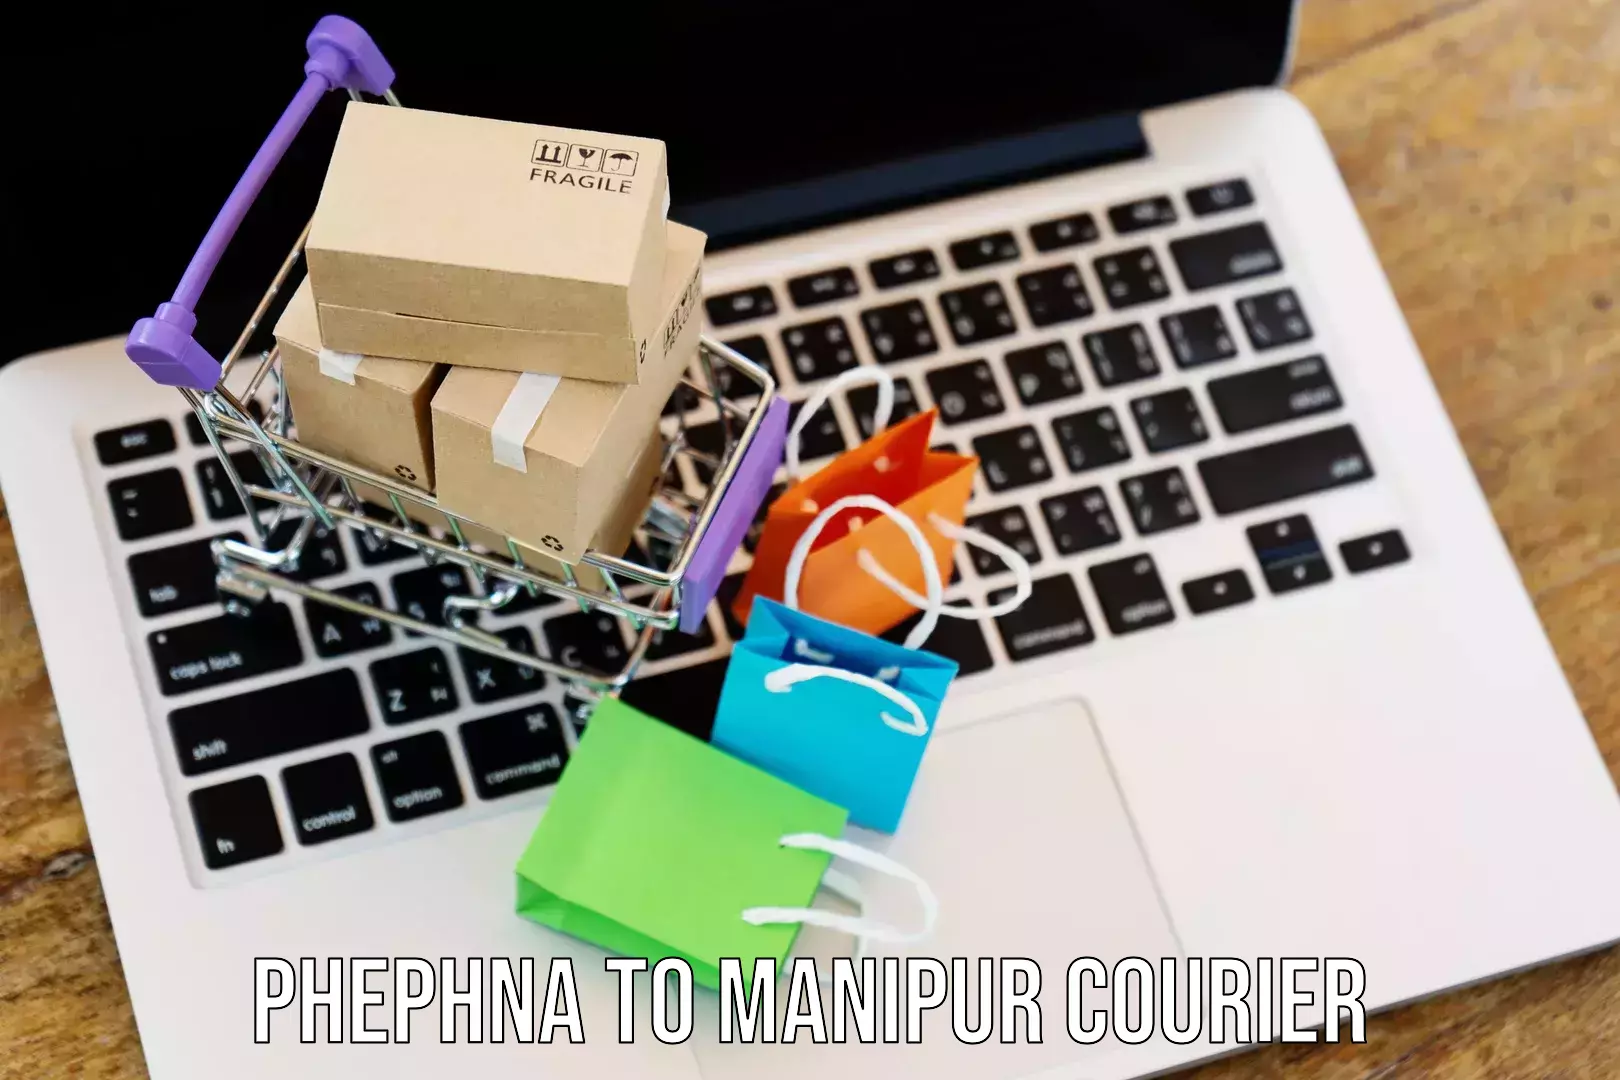 Cost-effective courier options Phephna to Churachandpur